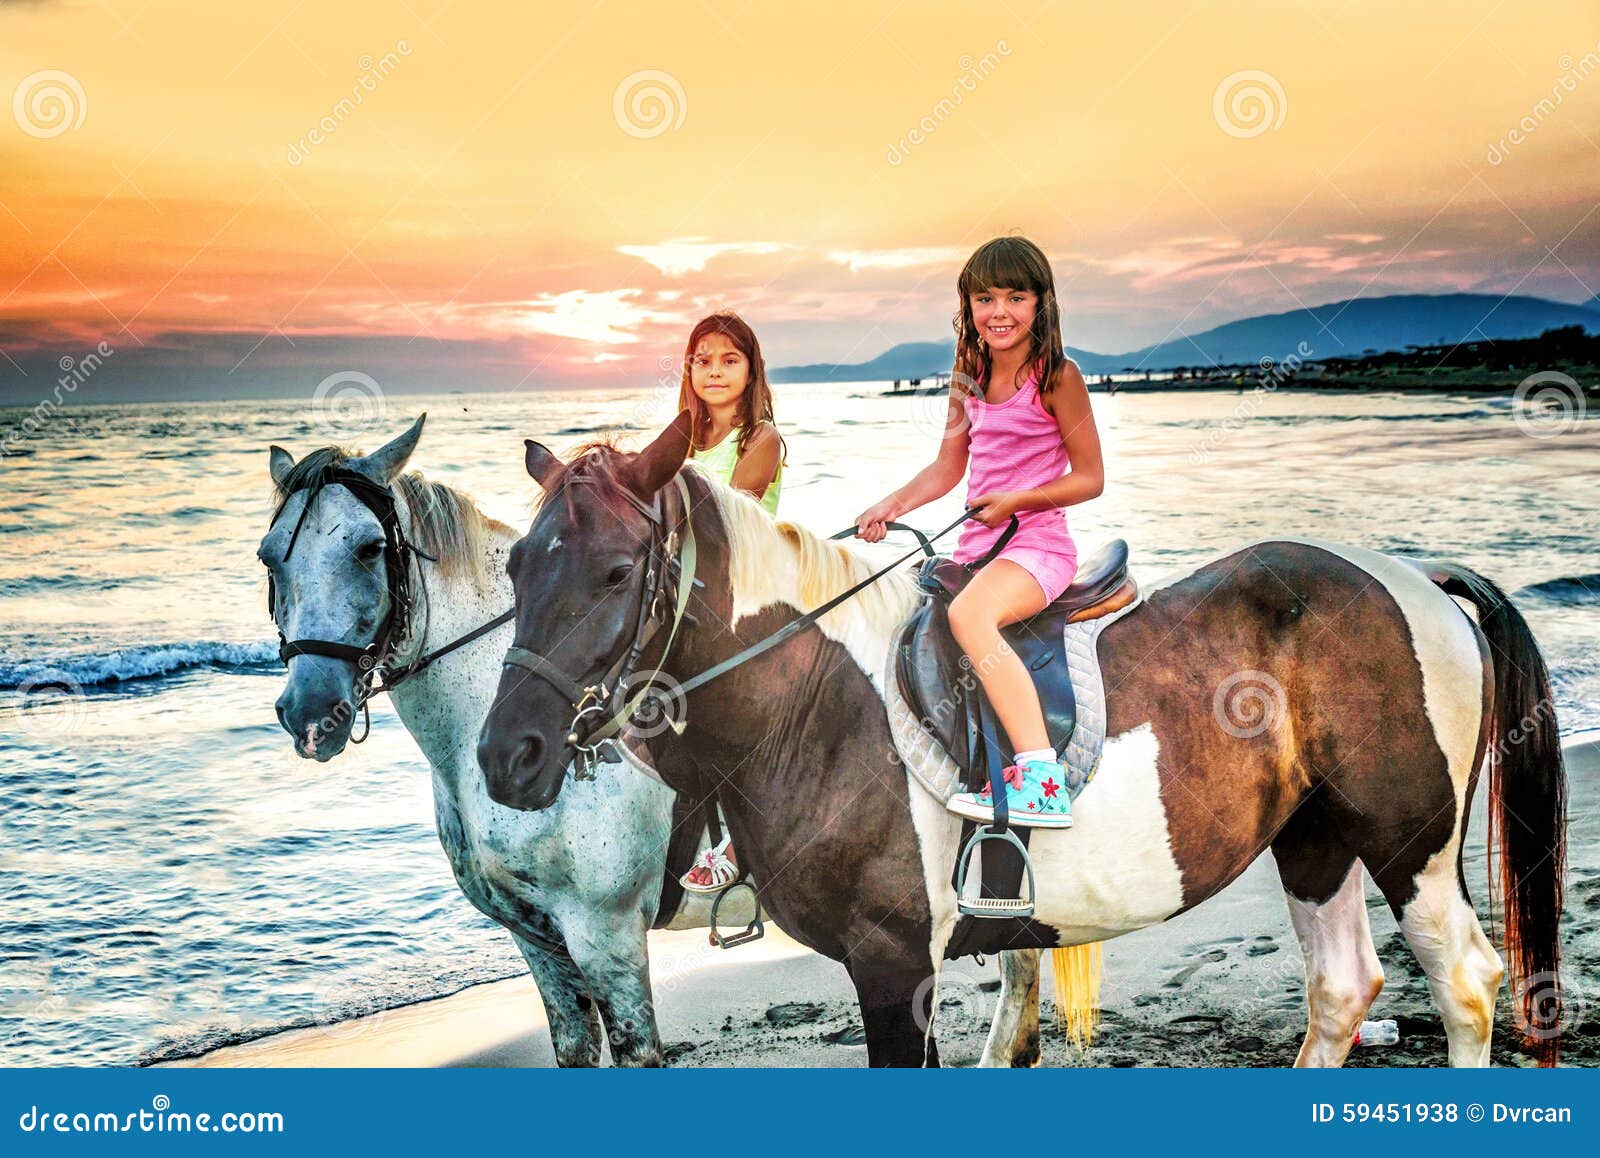 Riding sister. Сестрица на лошадях. Сёстры лошадей. Сестры и конь. Прокатись с сестрой на лошадках.